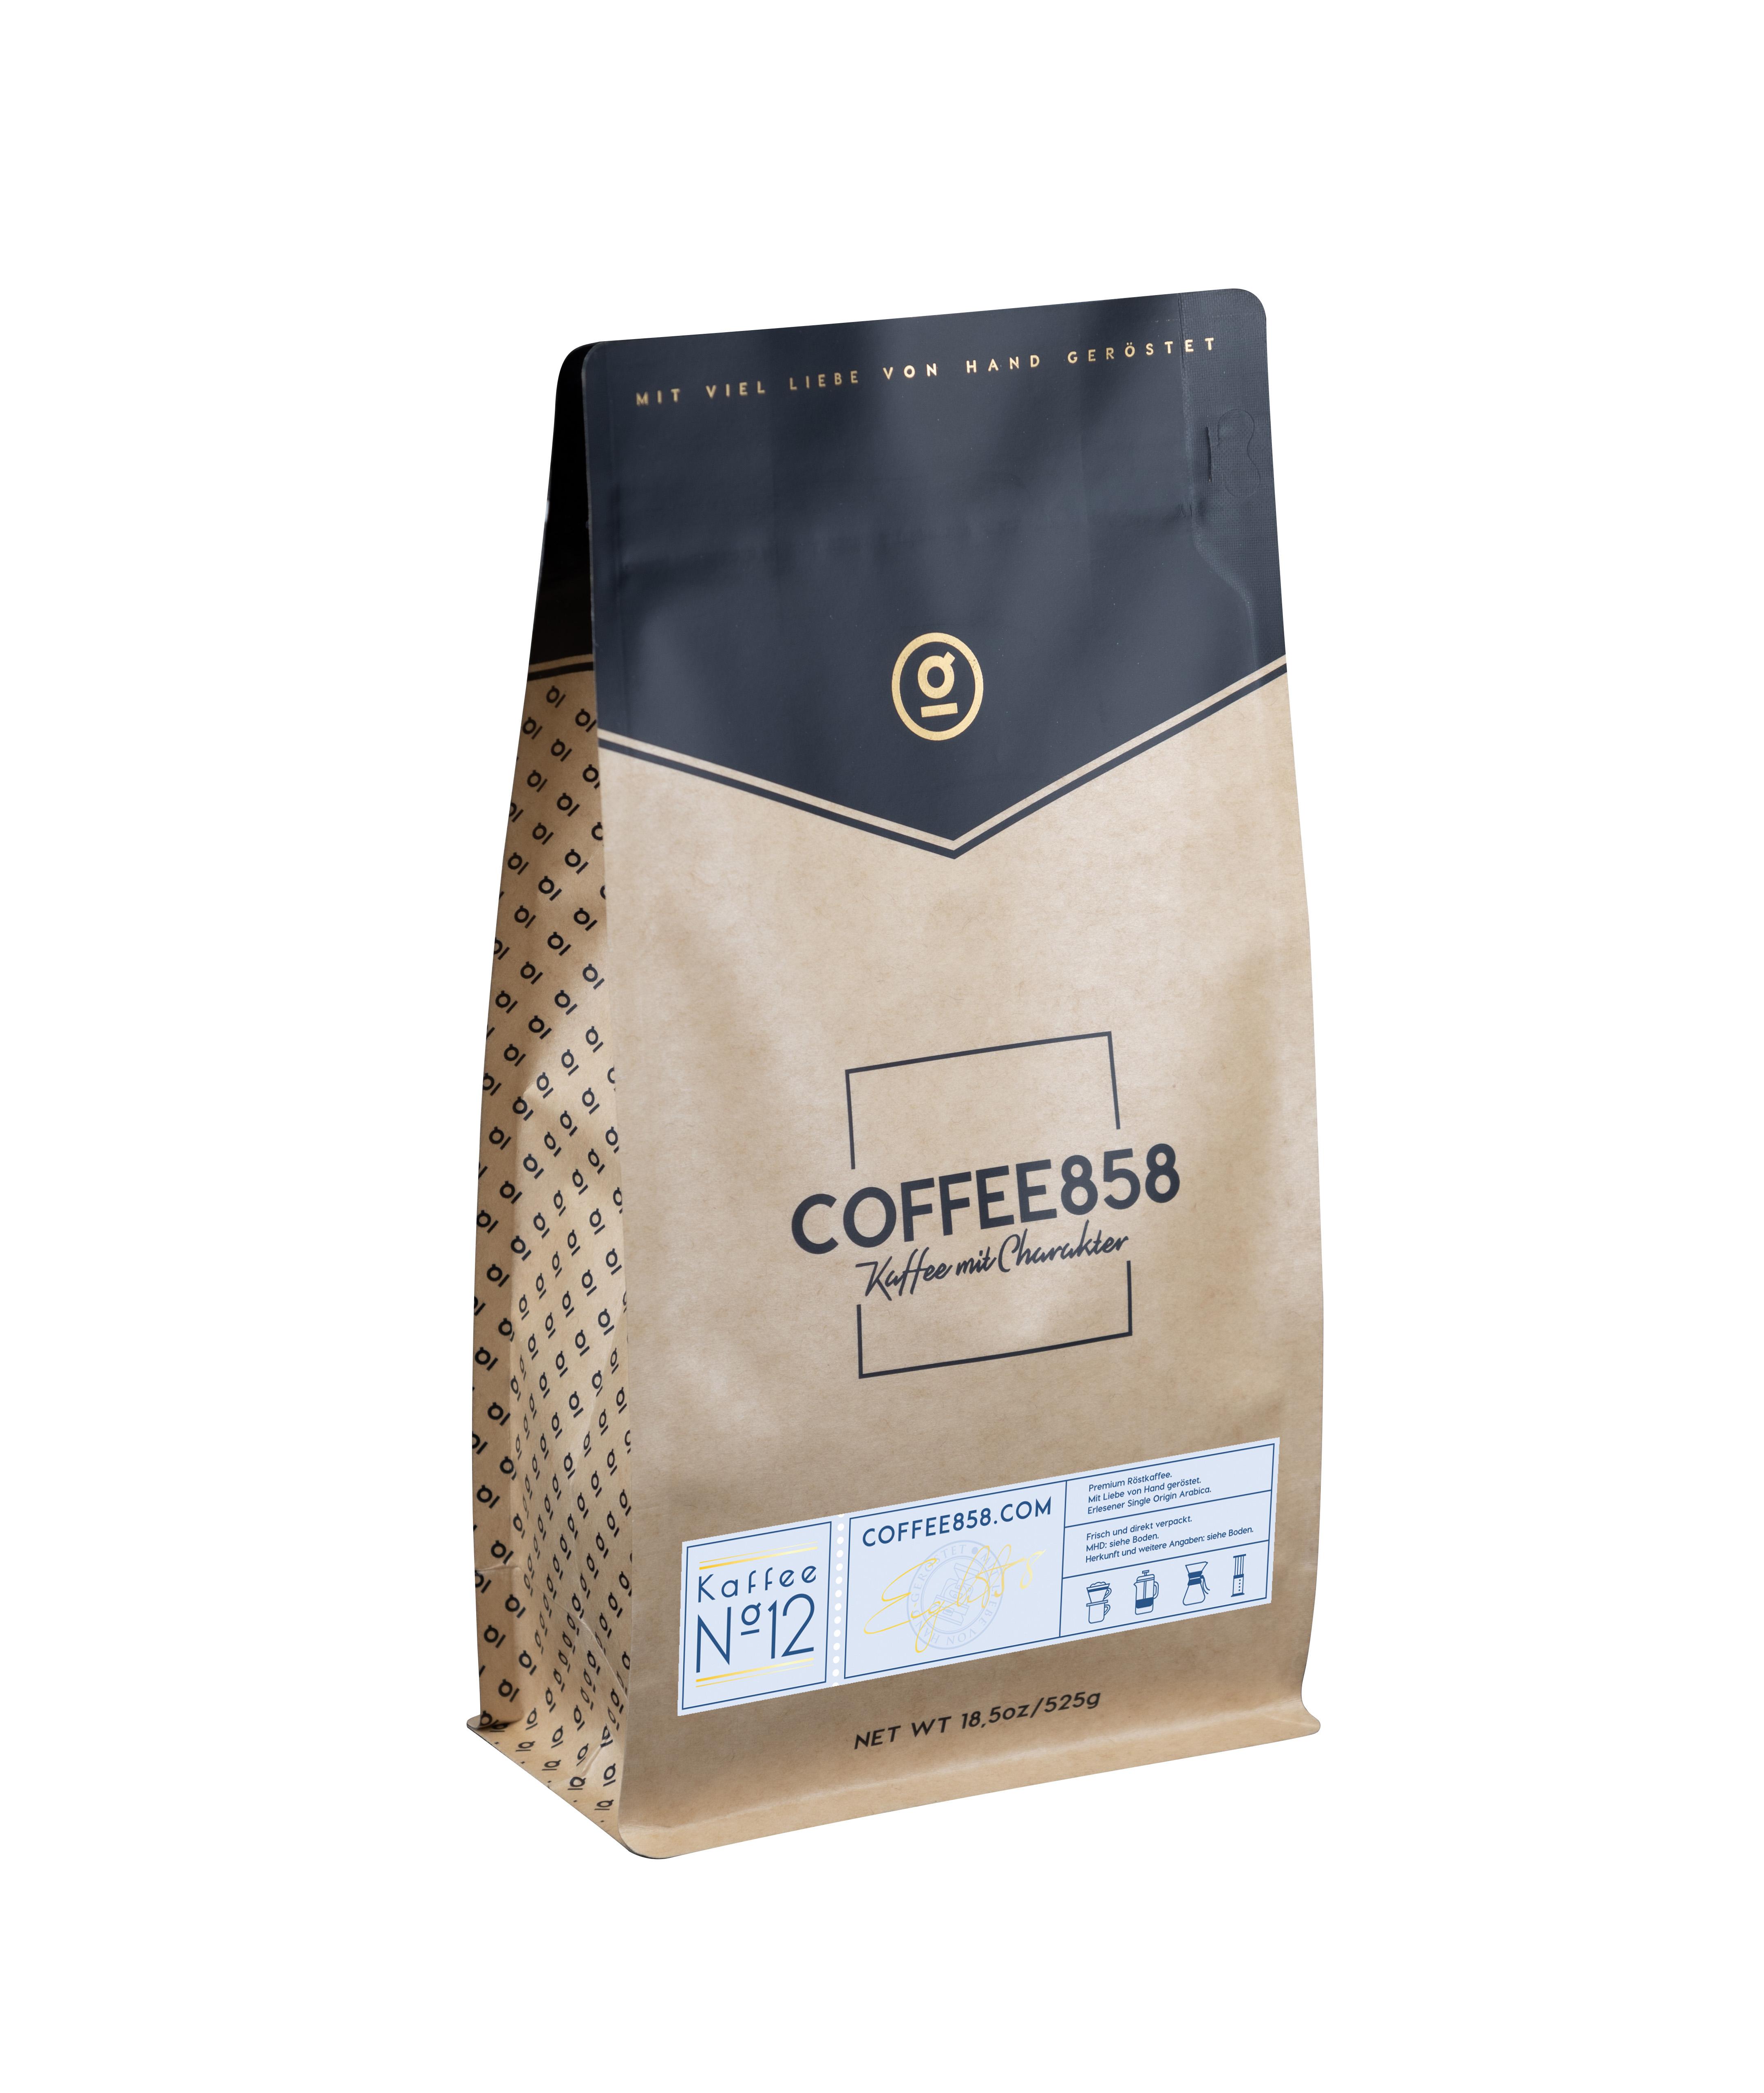 Kaffee N°12 - Single Origin Arabica aus Äthiopien